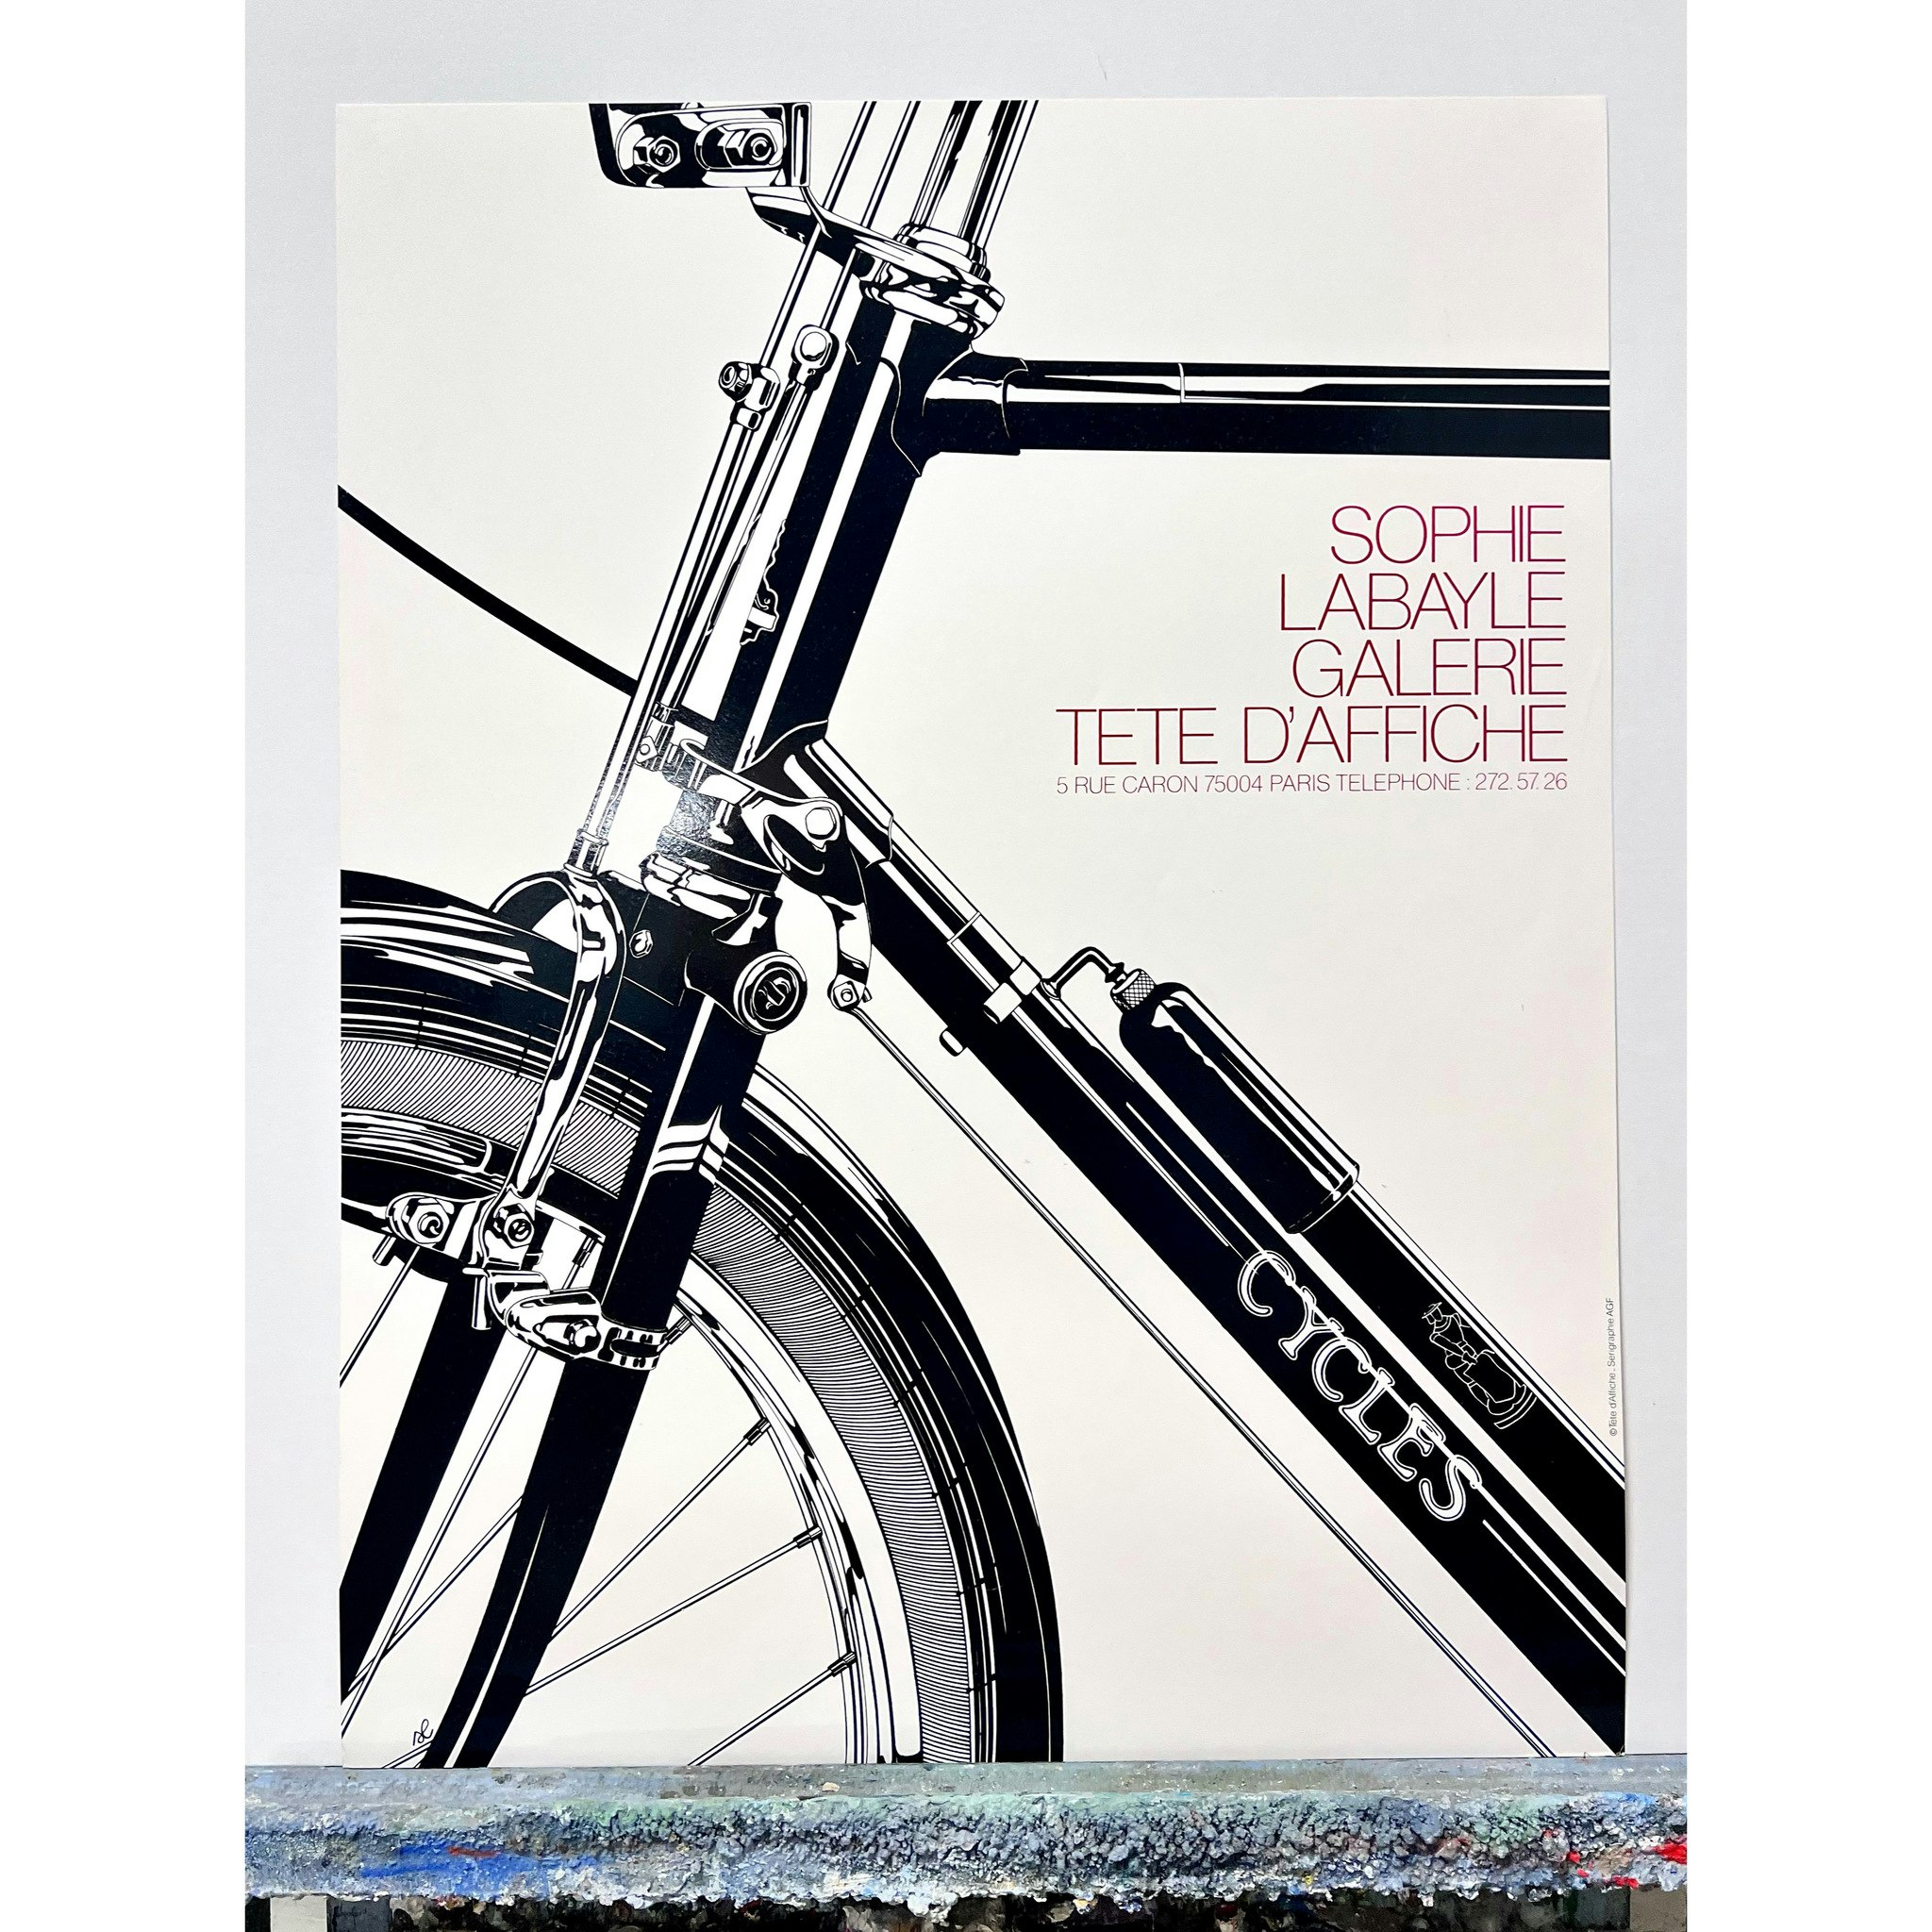 "Cycles" Originalposter av Sophie Labayle från 1982. 61x79 cm